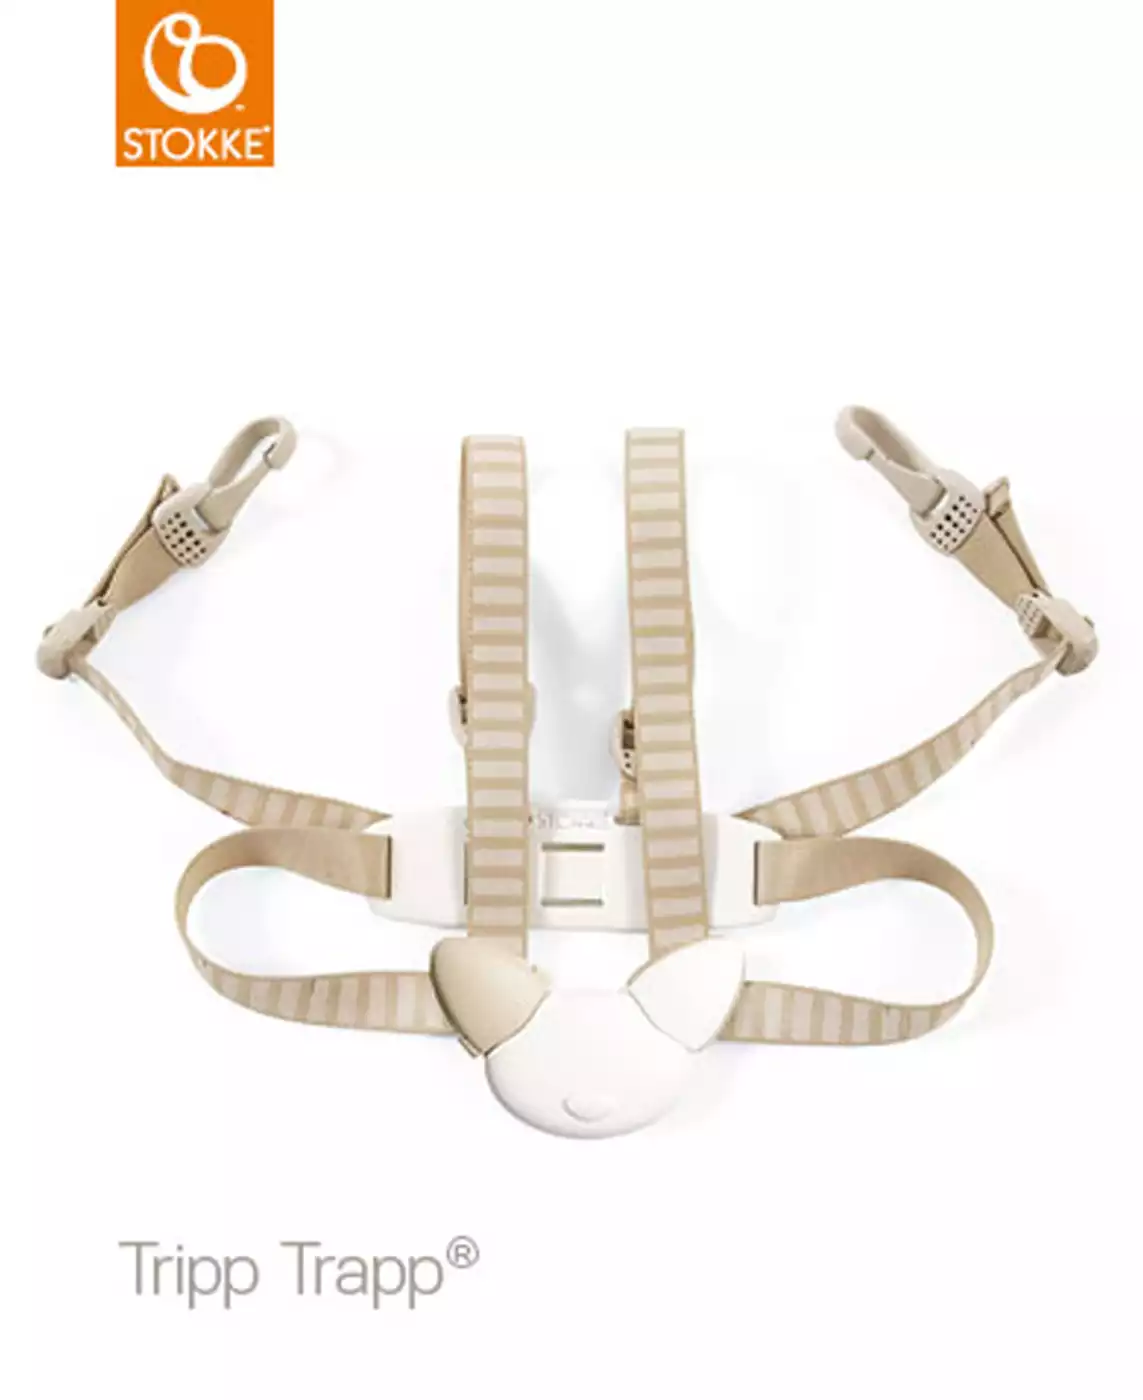 Tripp Trapp® Sicherheitsgurt STOKKE Beige 2000522561803 3